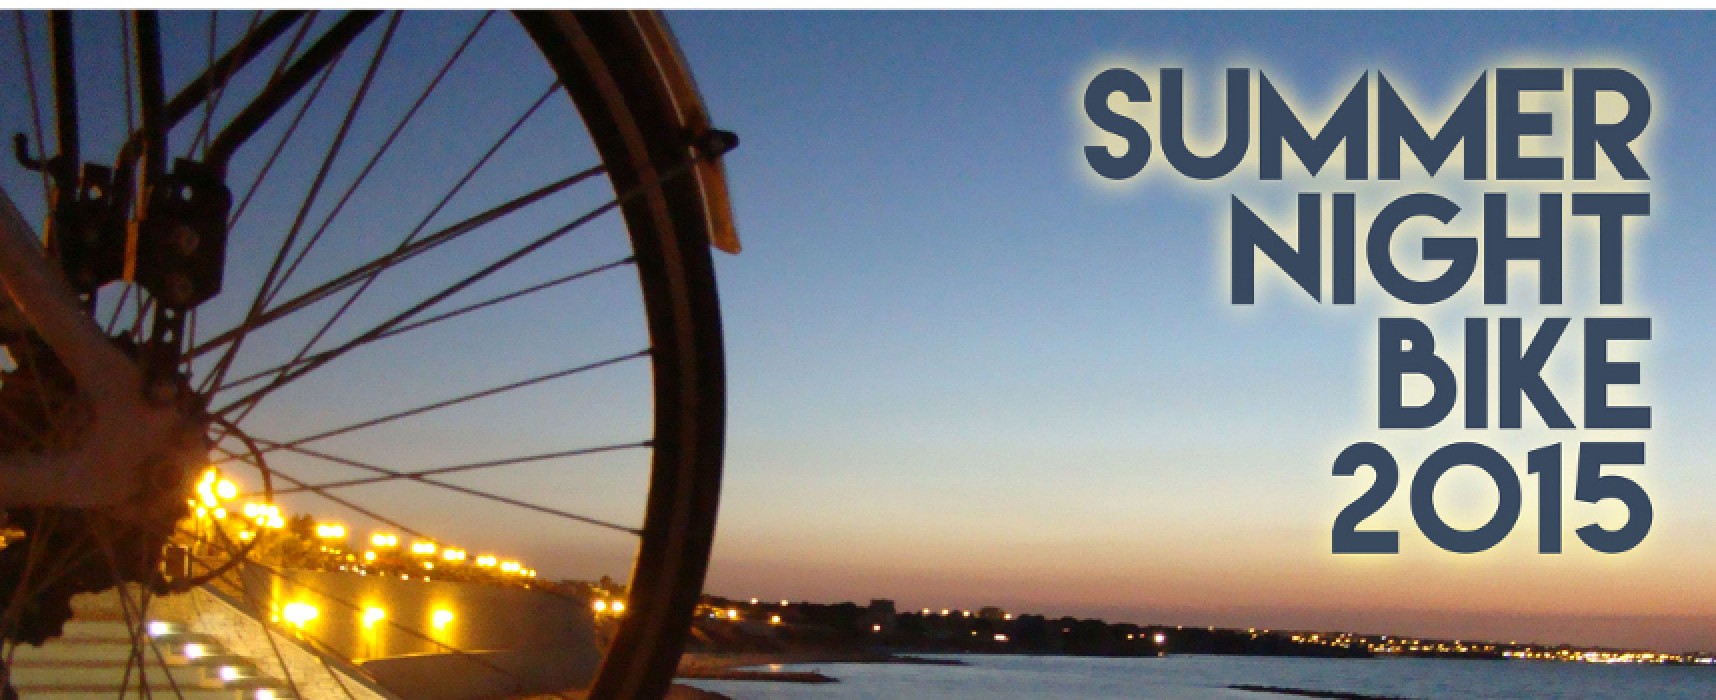 Terzo appuntamento con “Summer Night Bike” organizzato da Biciliae